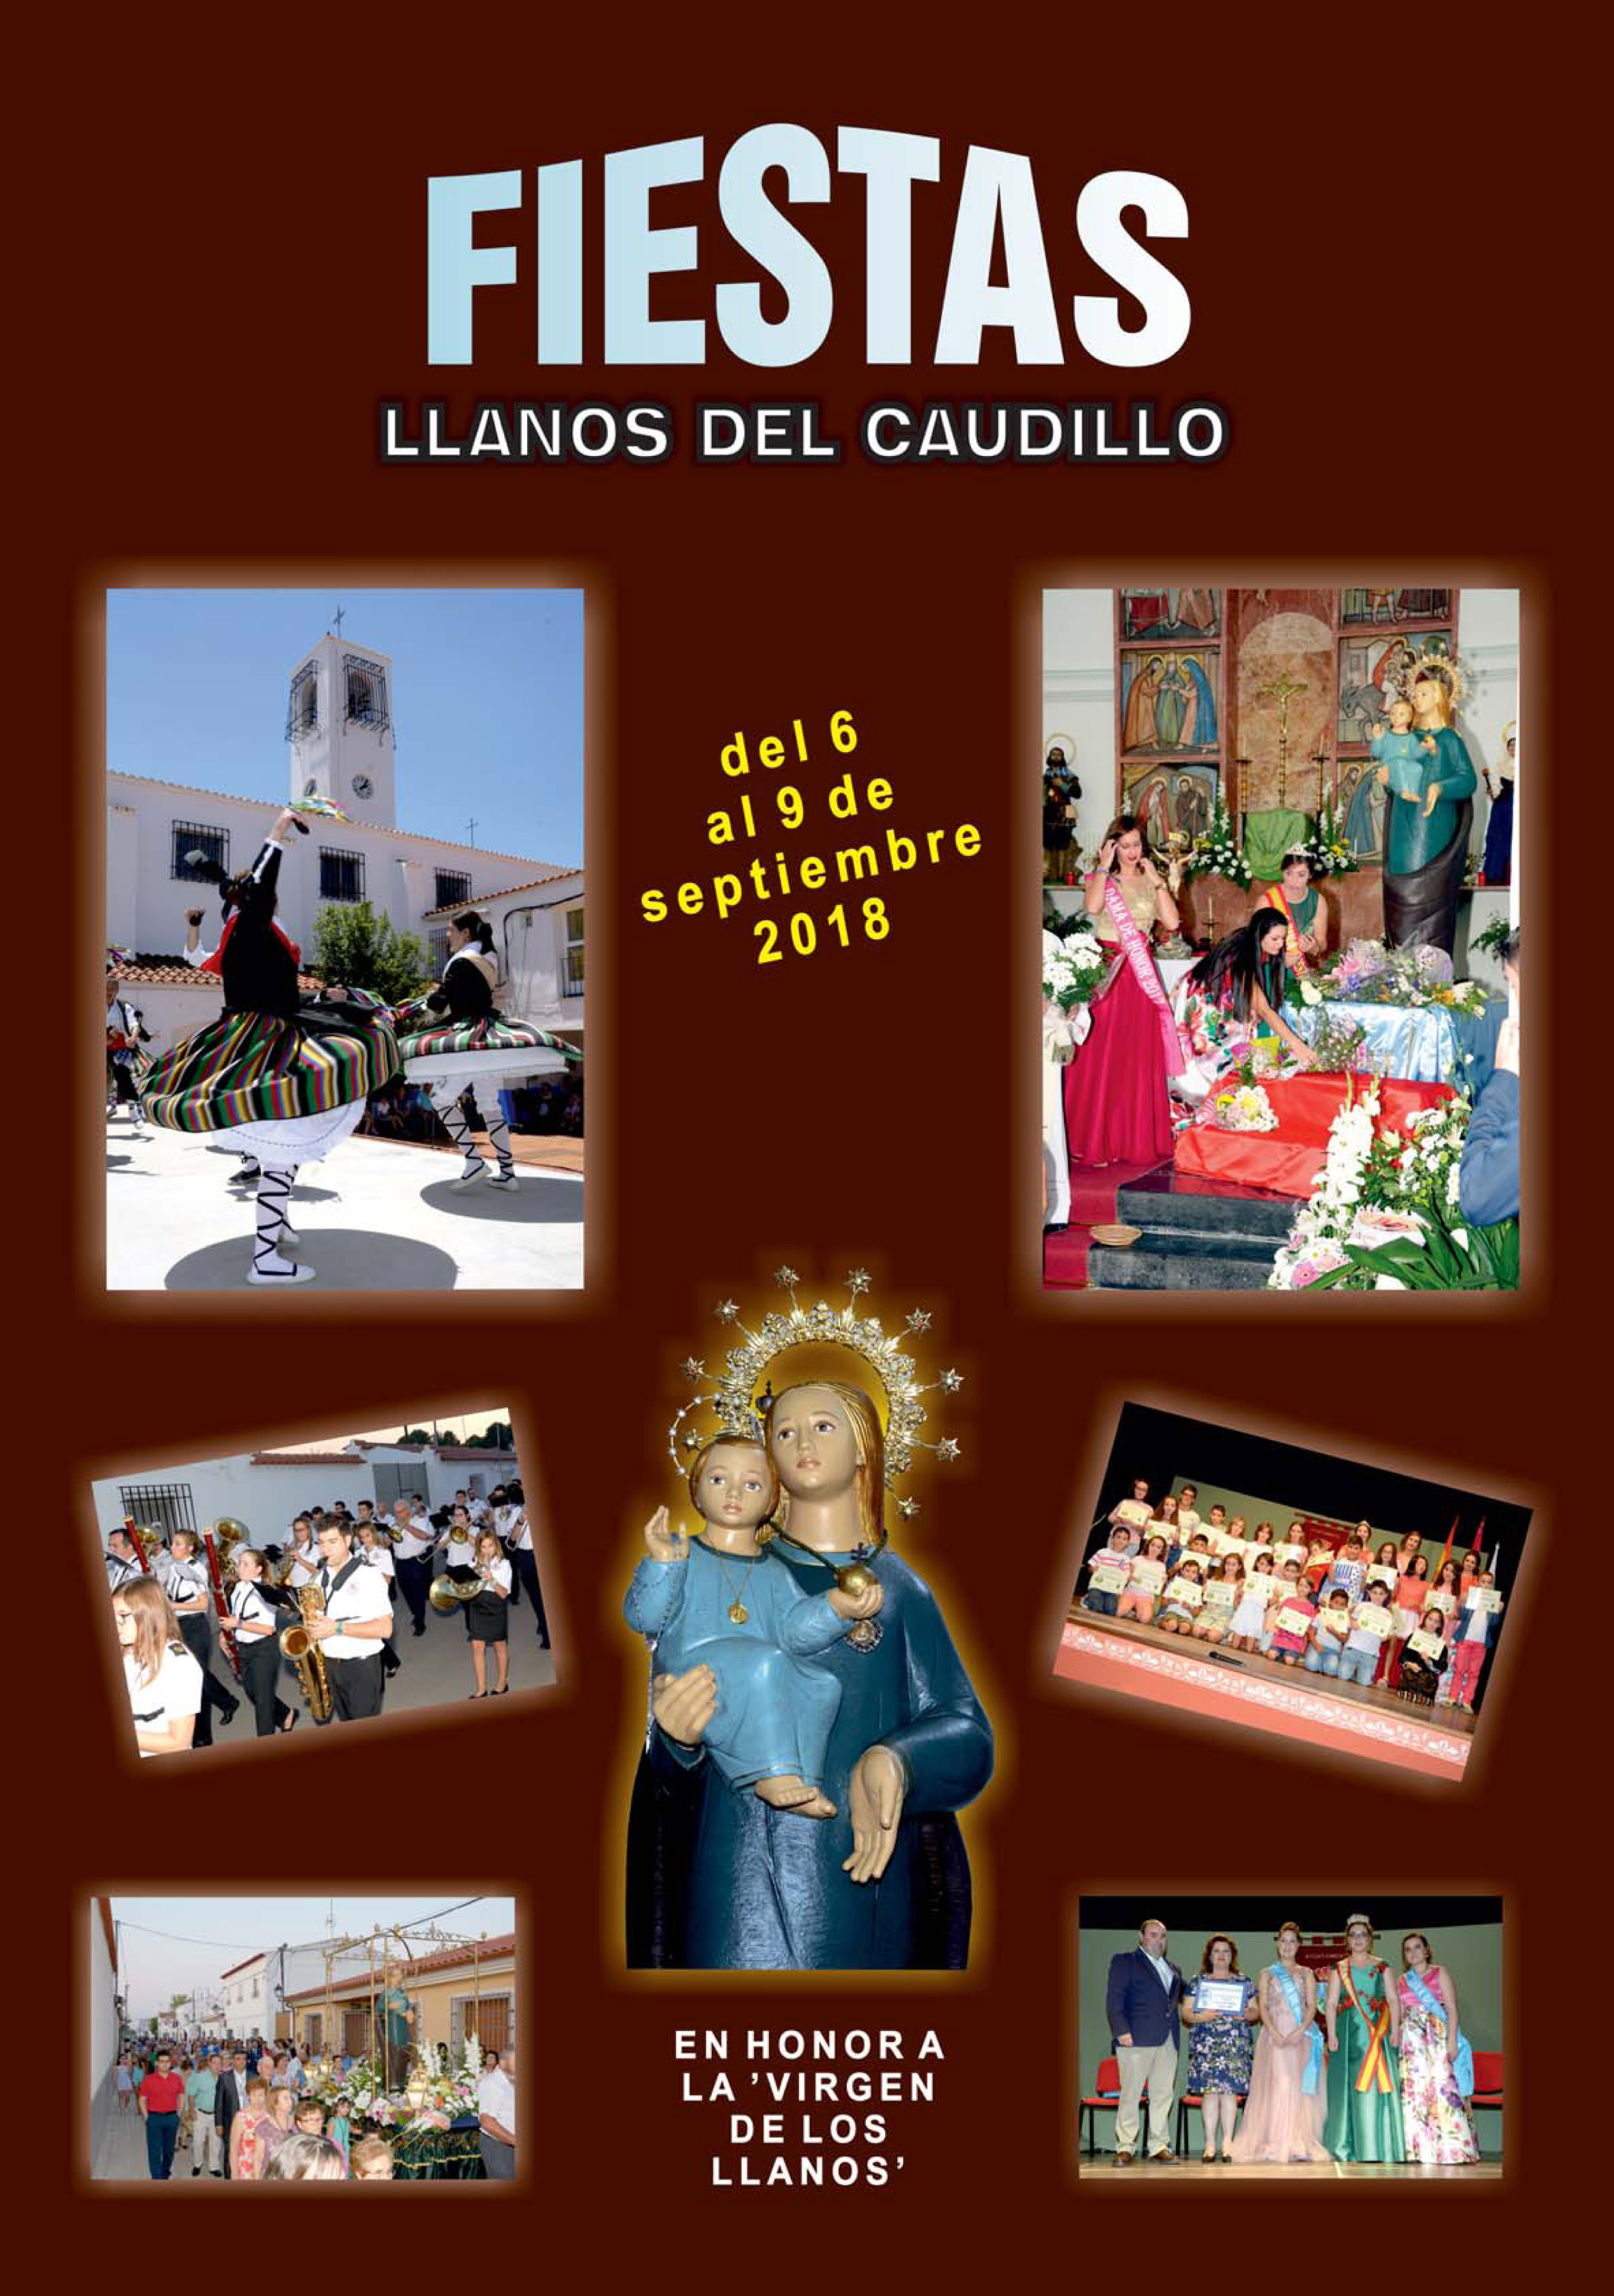 Programa oficial de Fiestas en Honor a la Virgen de los Llanos 2018